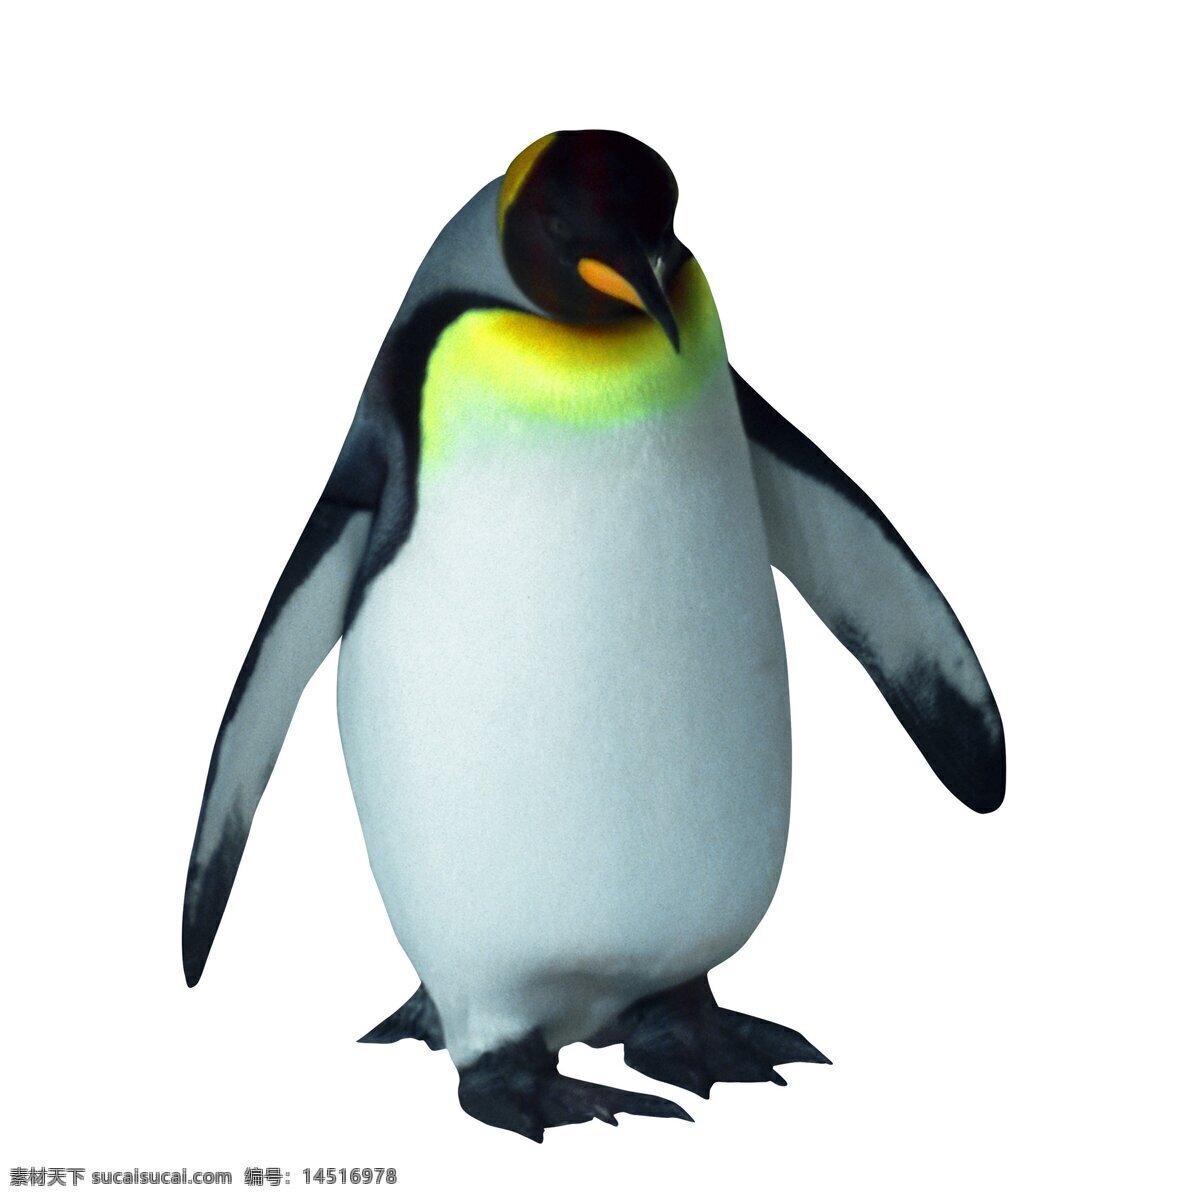 企鹅 动物摄影 南极企鹅 帝企鹅 企鹅素材 野生动物 生物世界